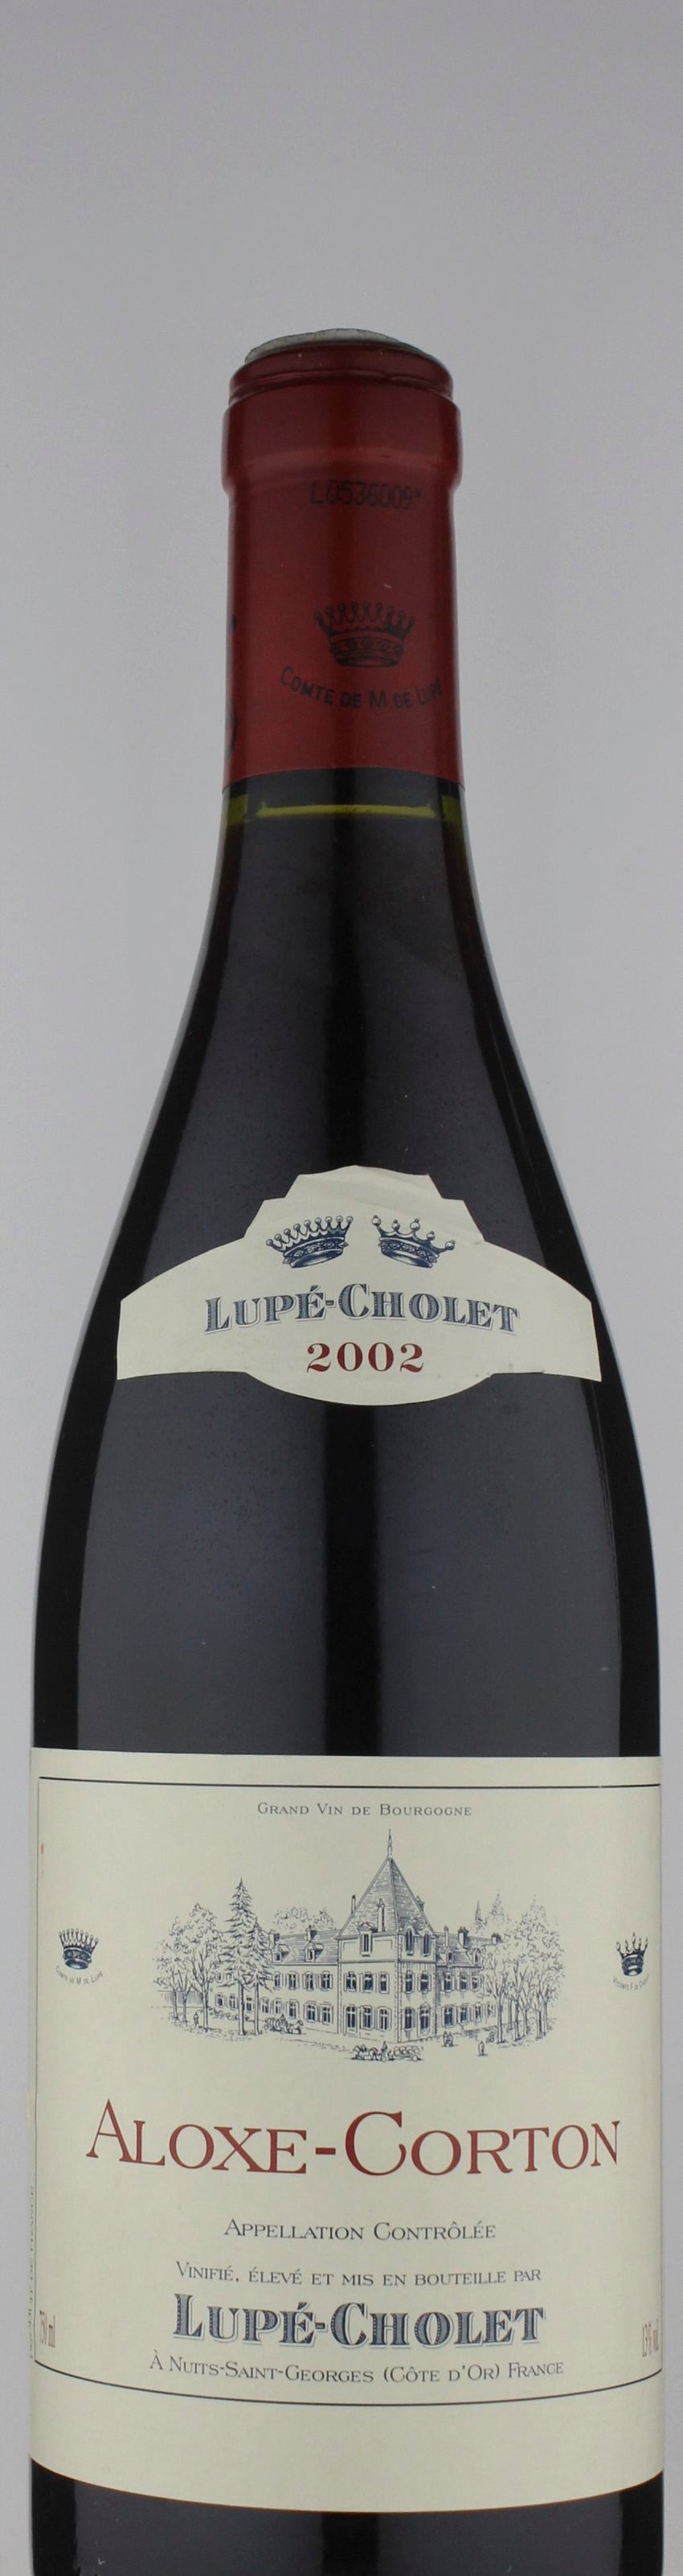 Lupe-Cholet Aloxe-Corton Burgundy 2002